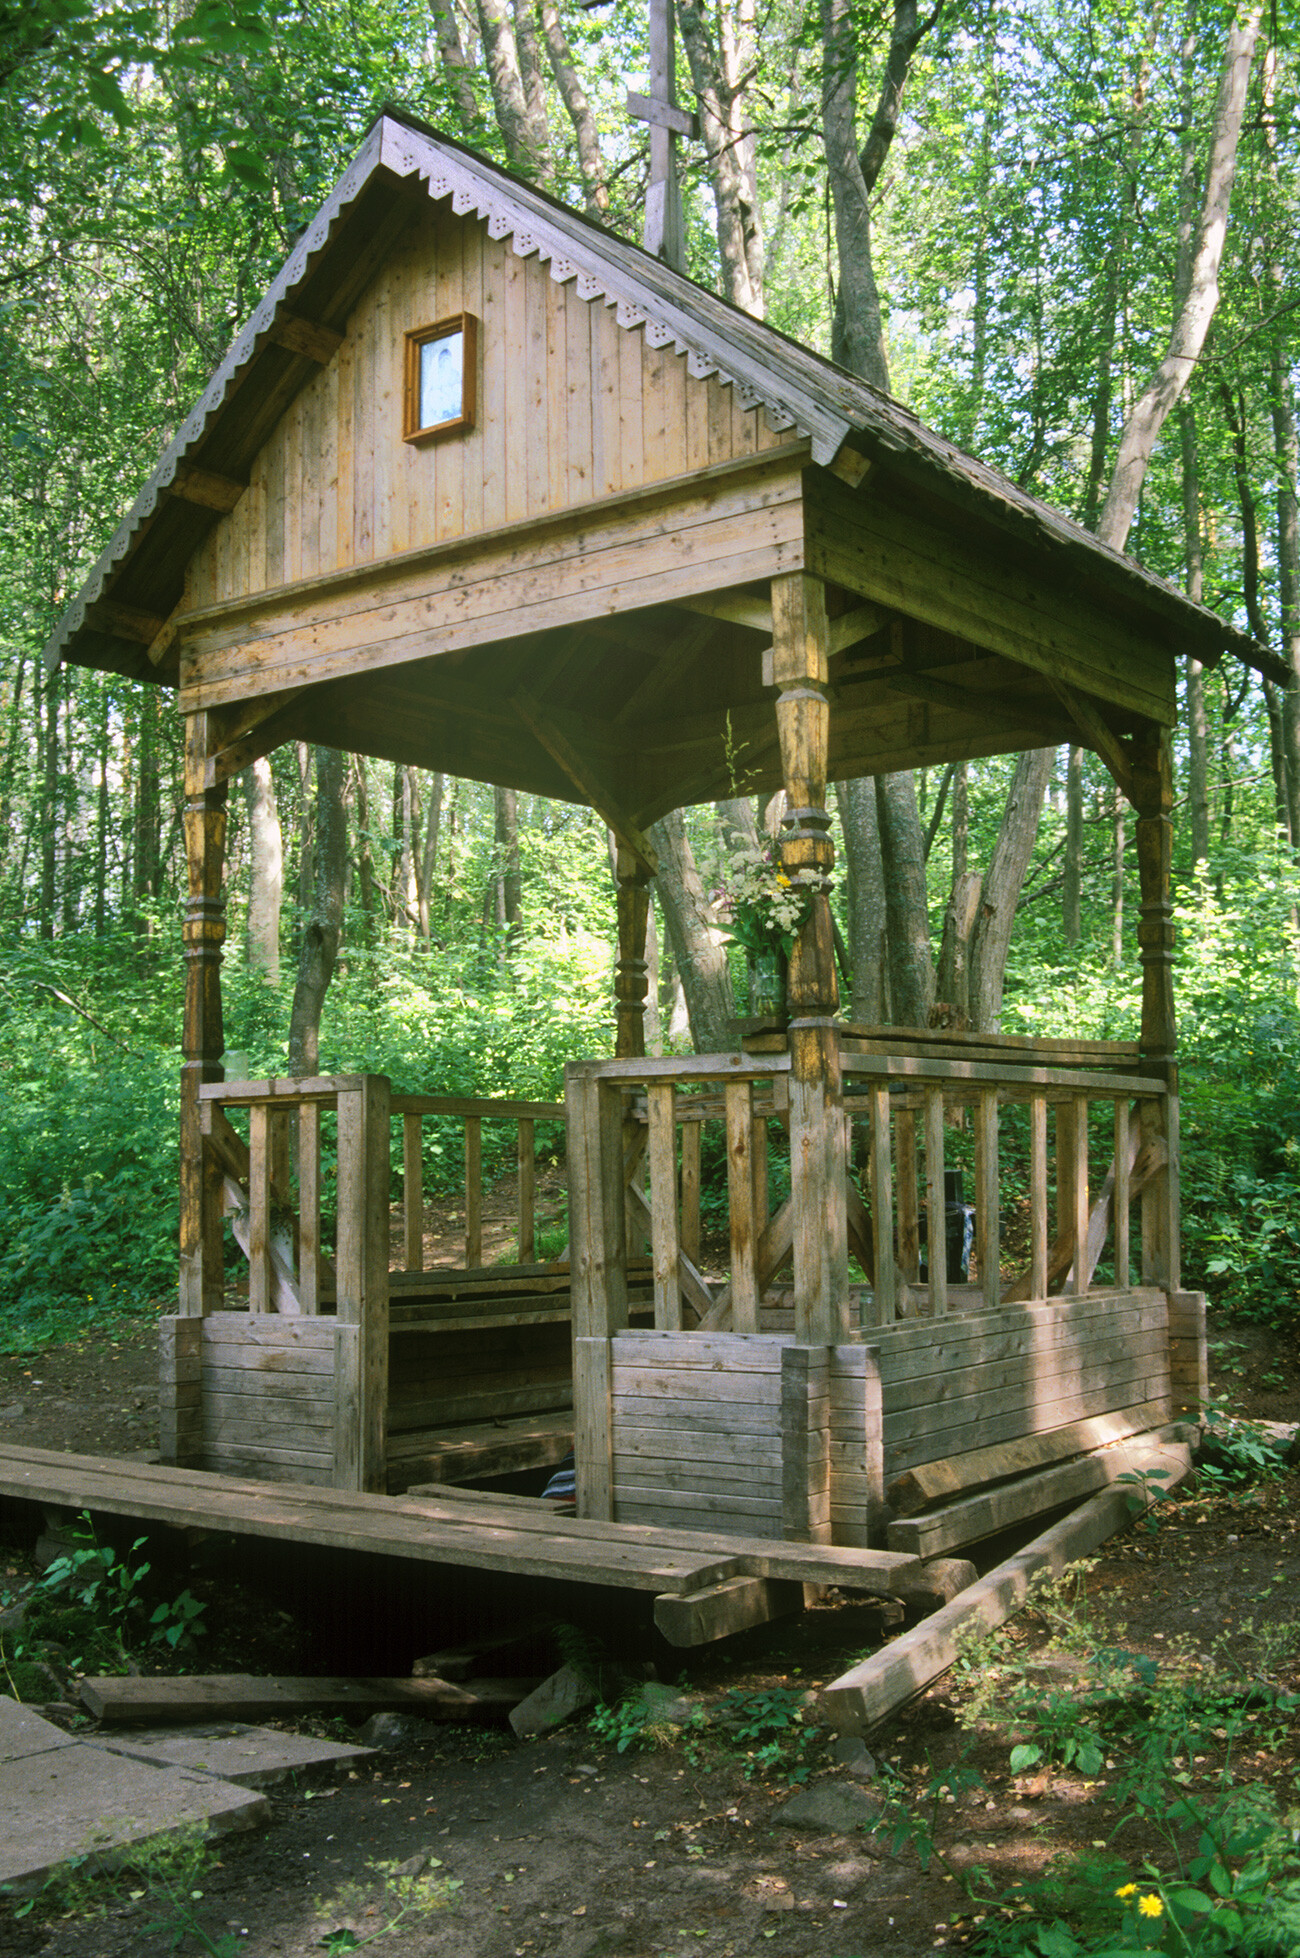 Podgornaya. Chapel pavilion over sacred spring. July 4, 2000